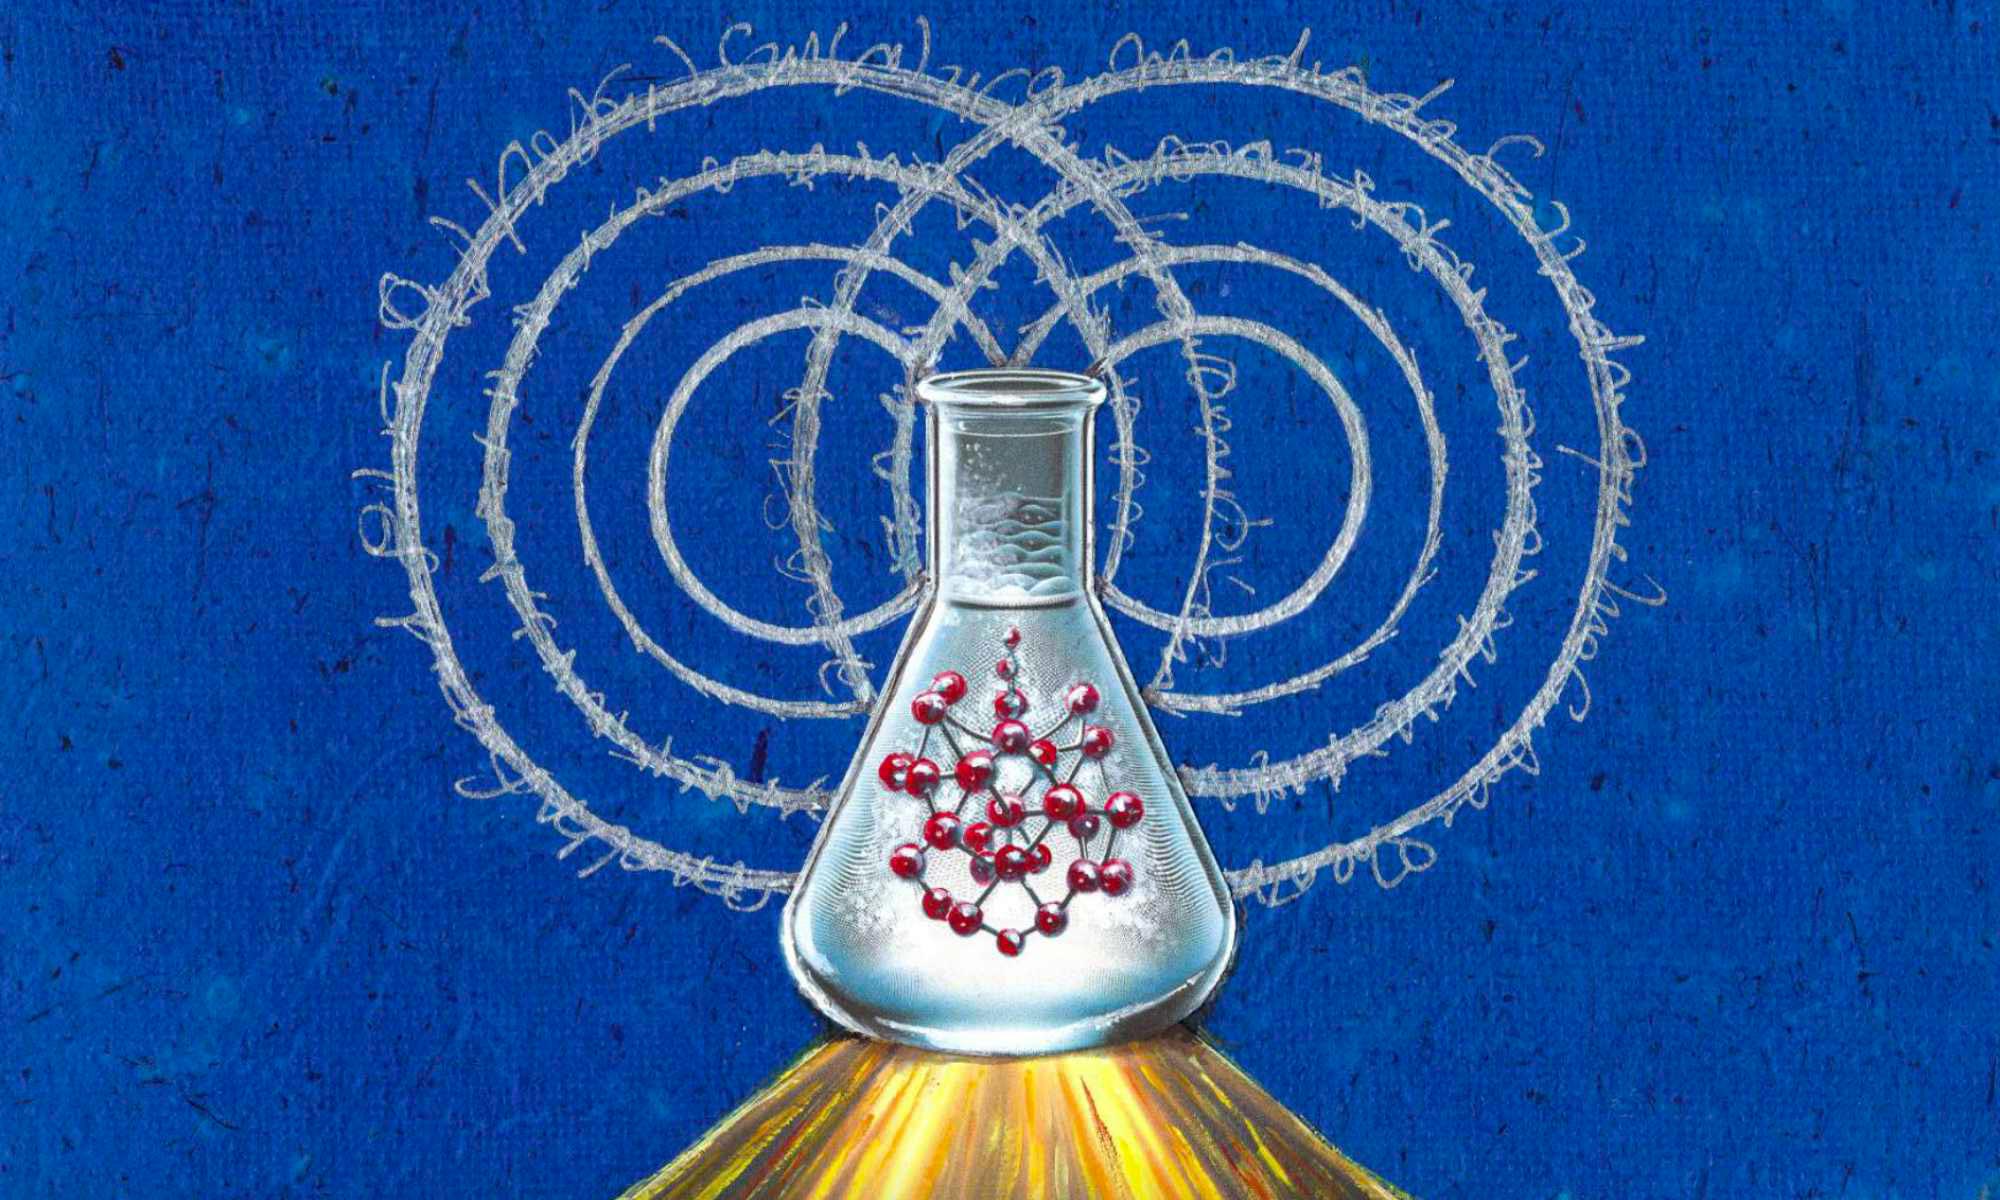 Una nuova strategia rivela la “completa complessità chimica” della decoerenza quantistica